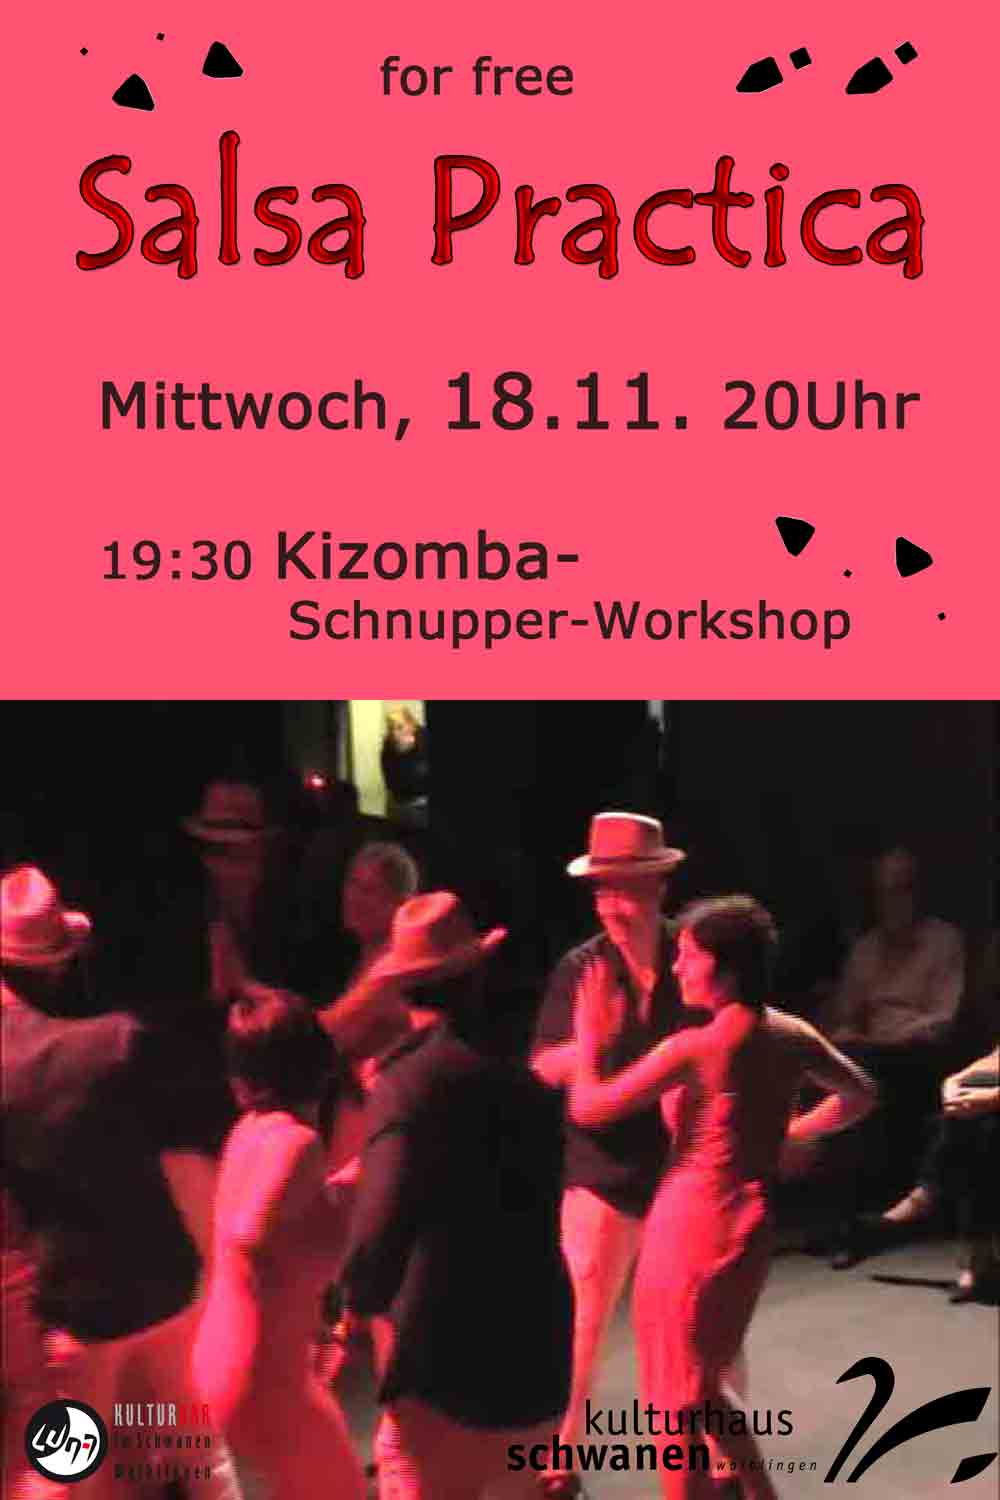 Plakat Salsa Practica 18.11.2015 in der Luna Bar im Kulturhaus Schwanen, Waiblingen